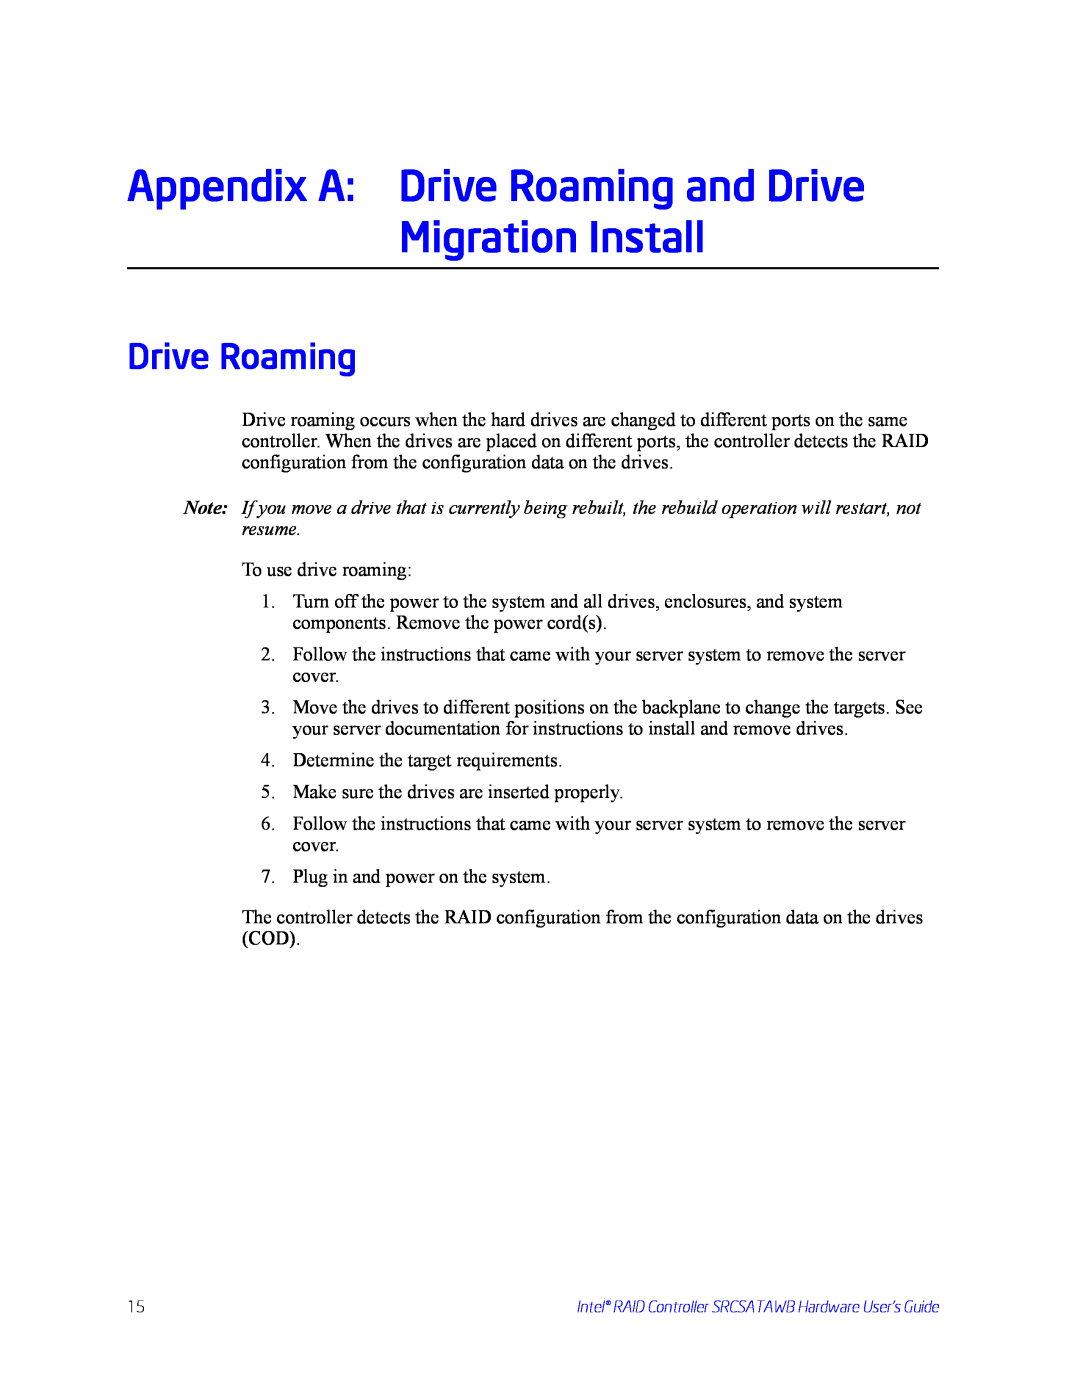 Intel SRCSATAWB manual Drive Roaming 